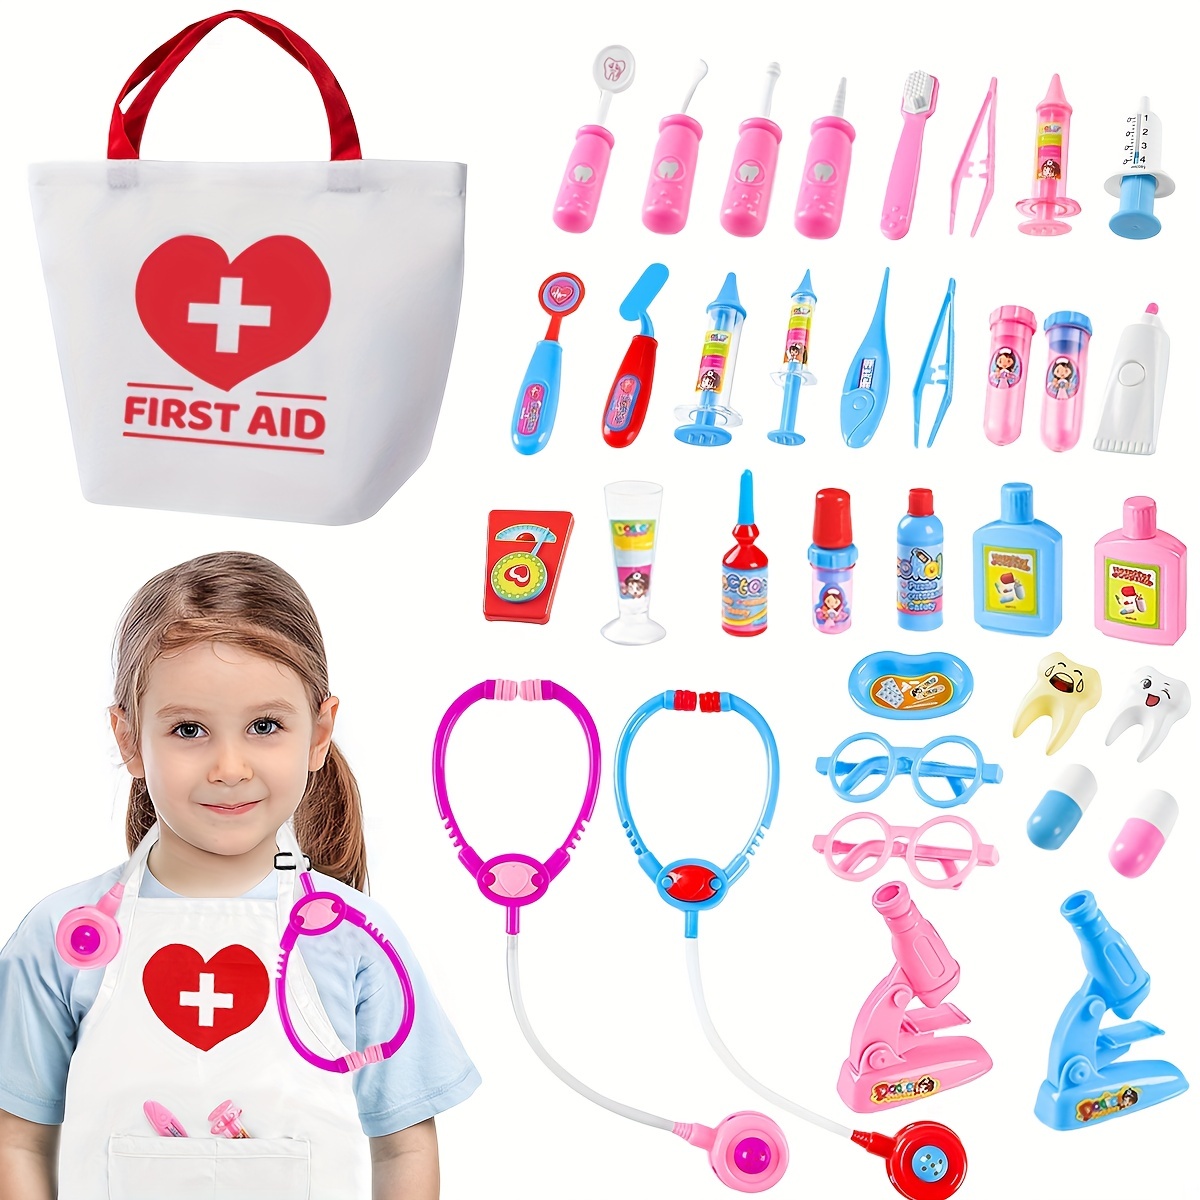 Kit de jouets médicaux avec sac pour enfants -W31691Z4-M0T